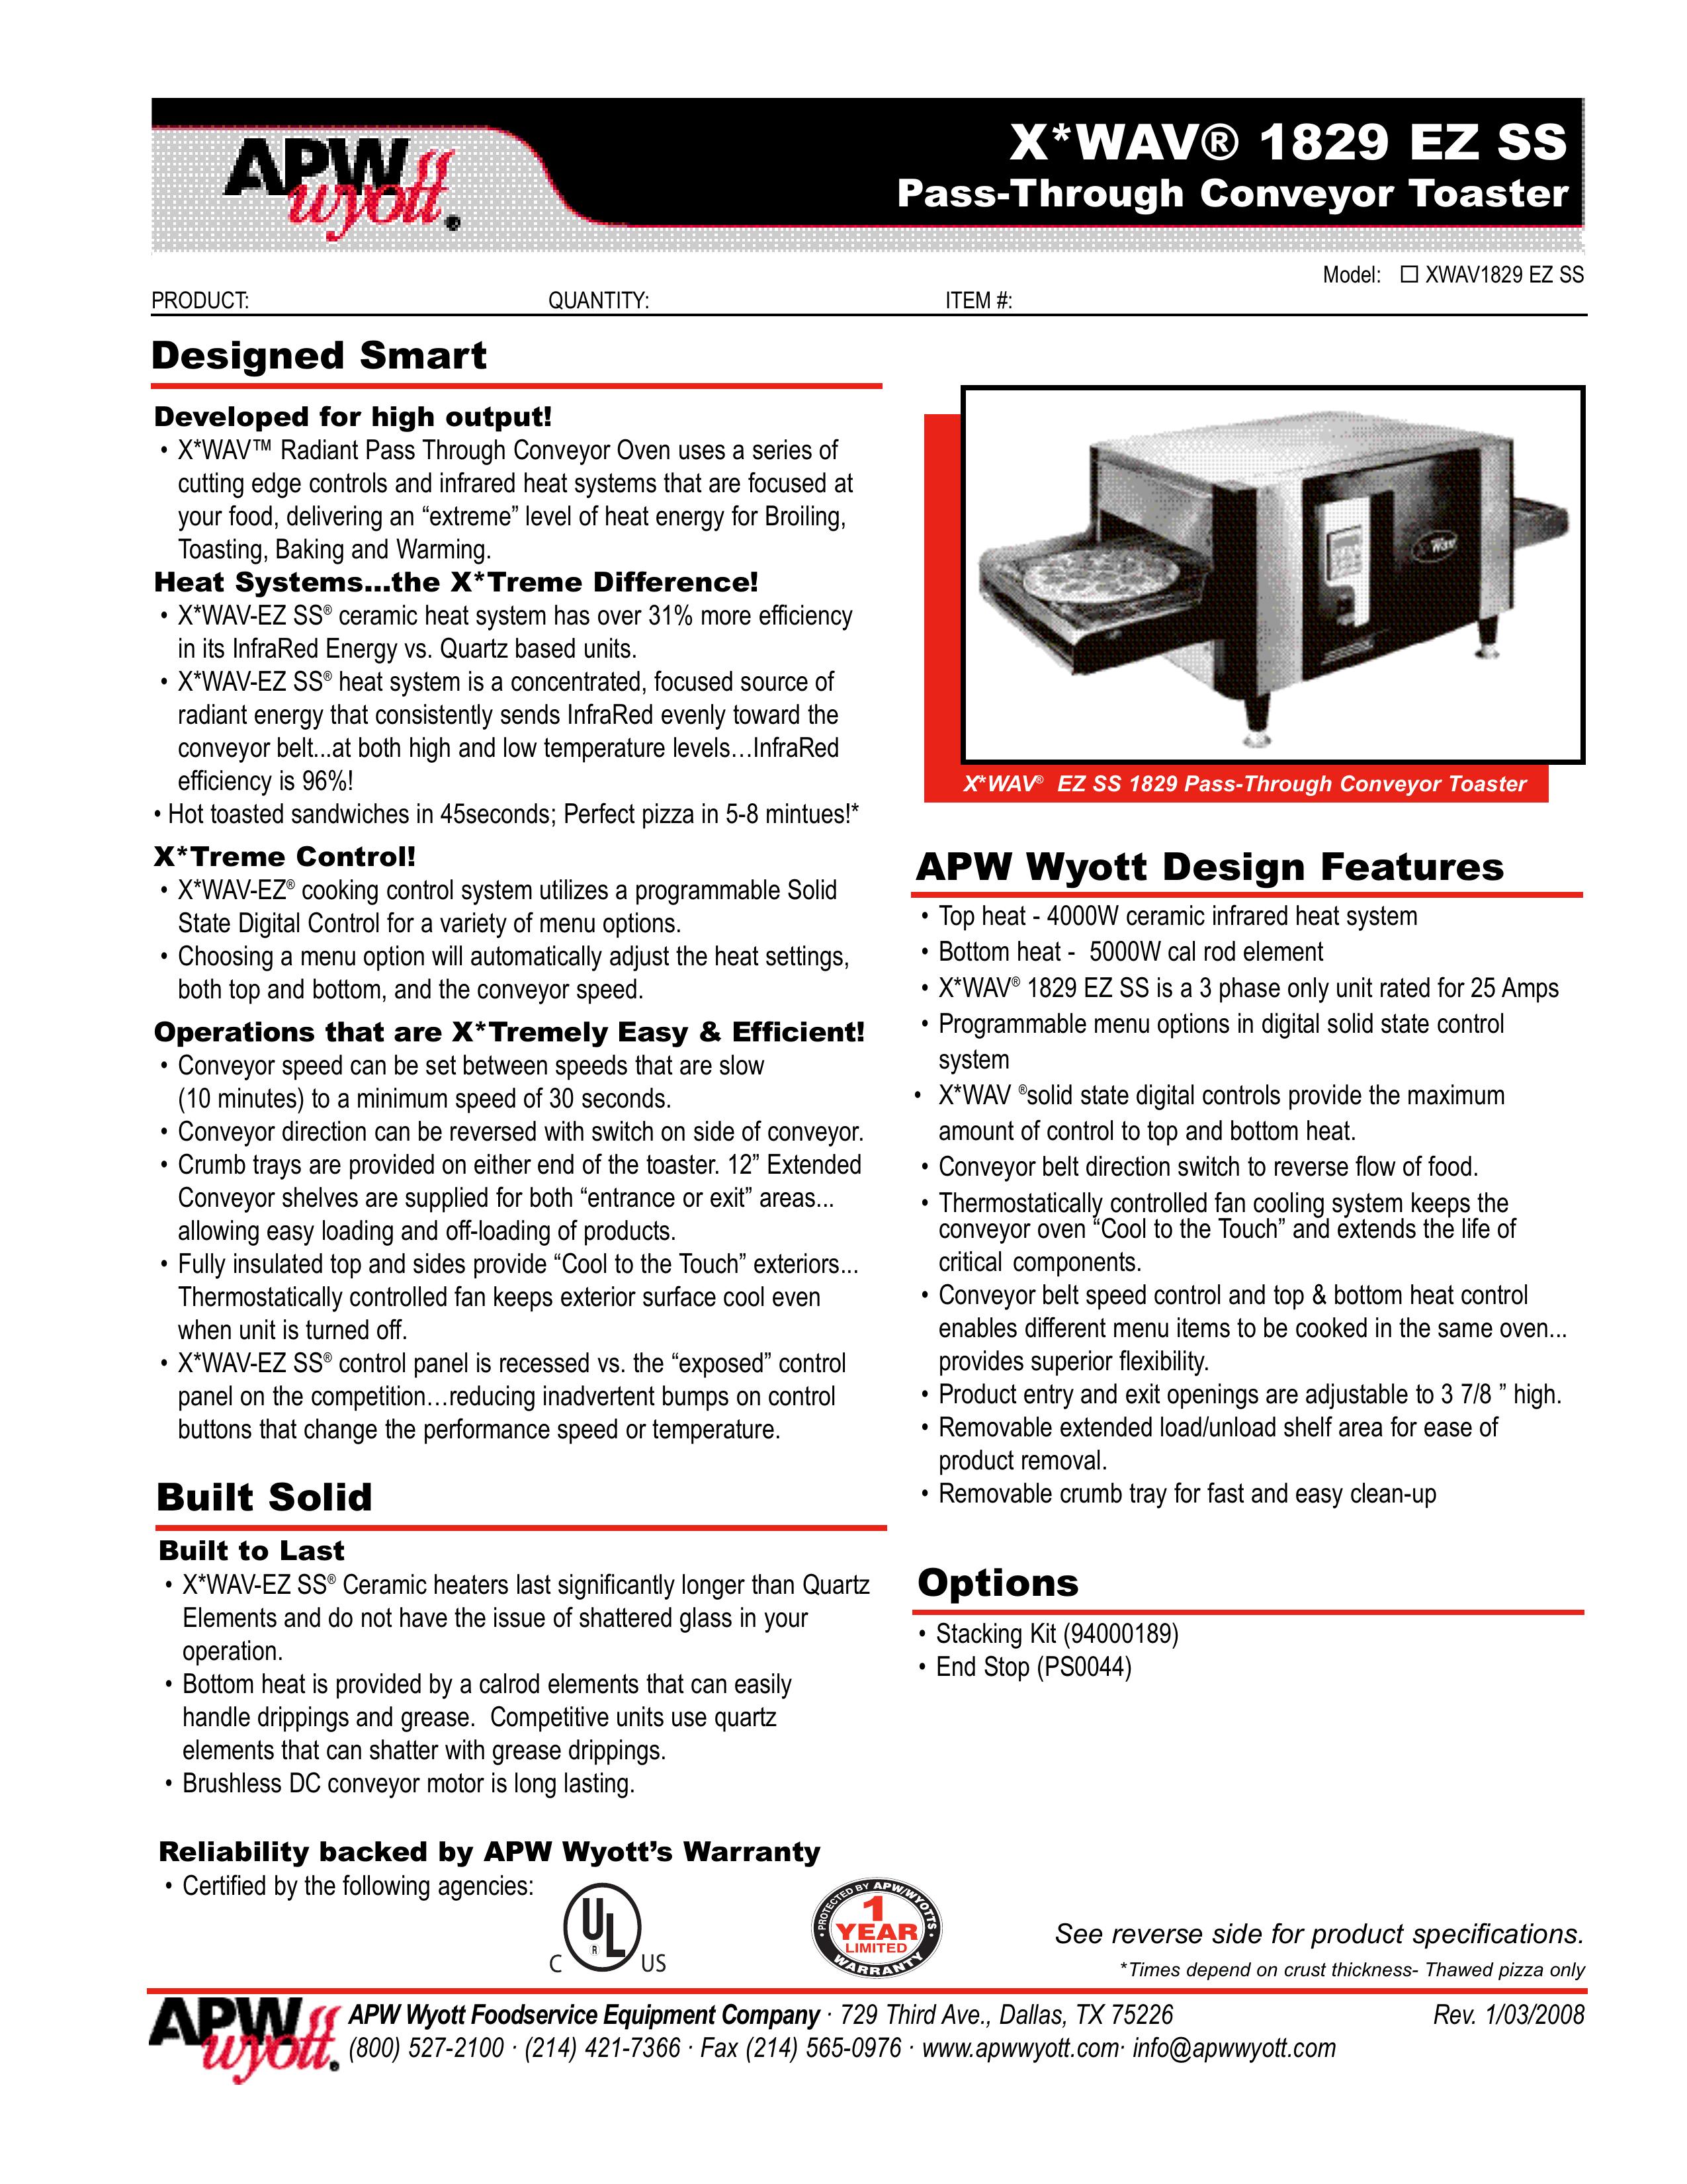 APW Wyott 1829 EZ SS Toaster User Manual